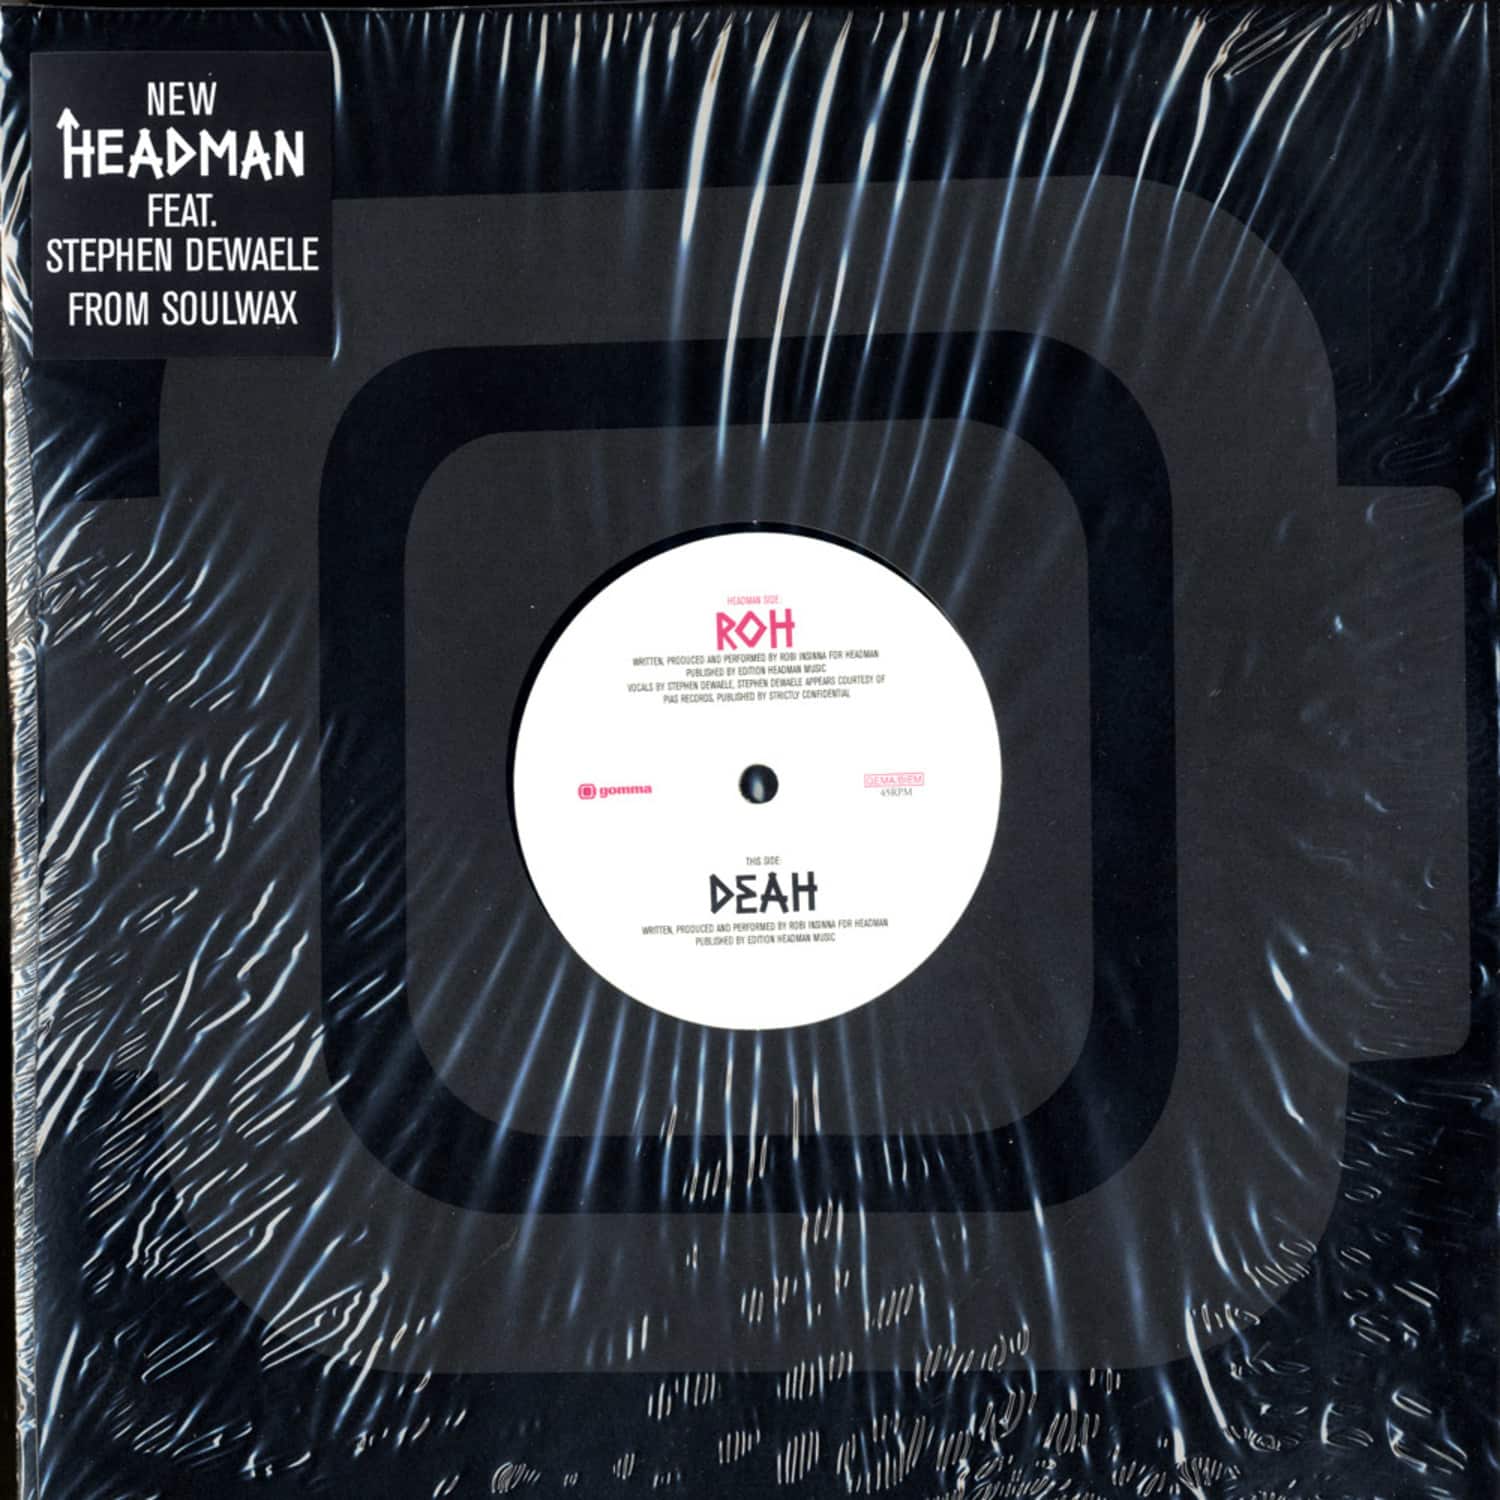 Headman - ROH / DEAH